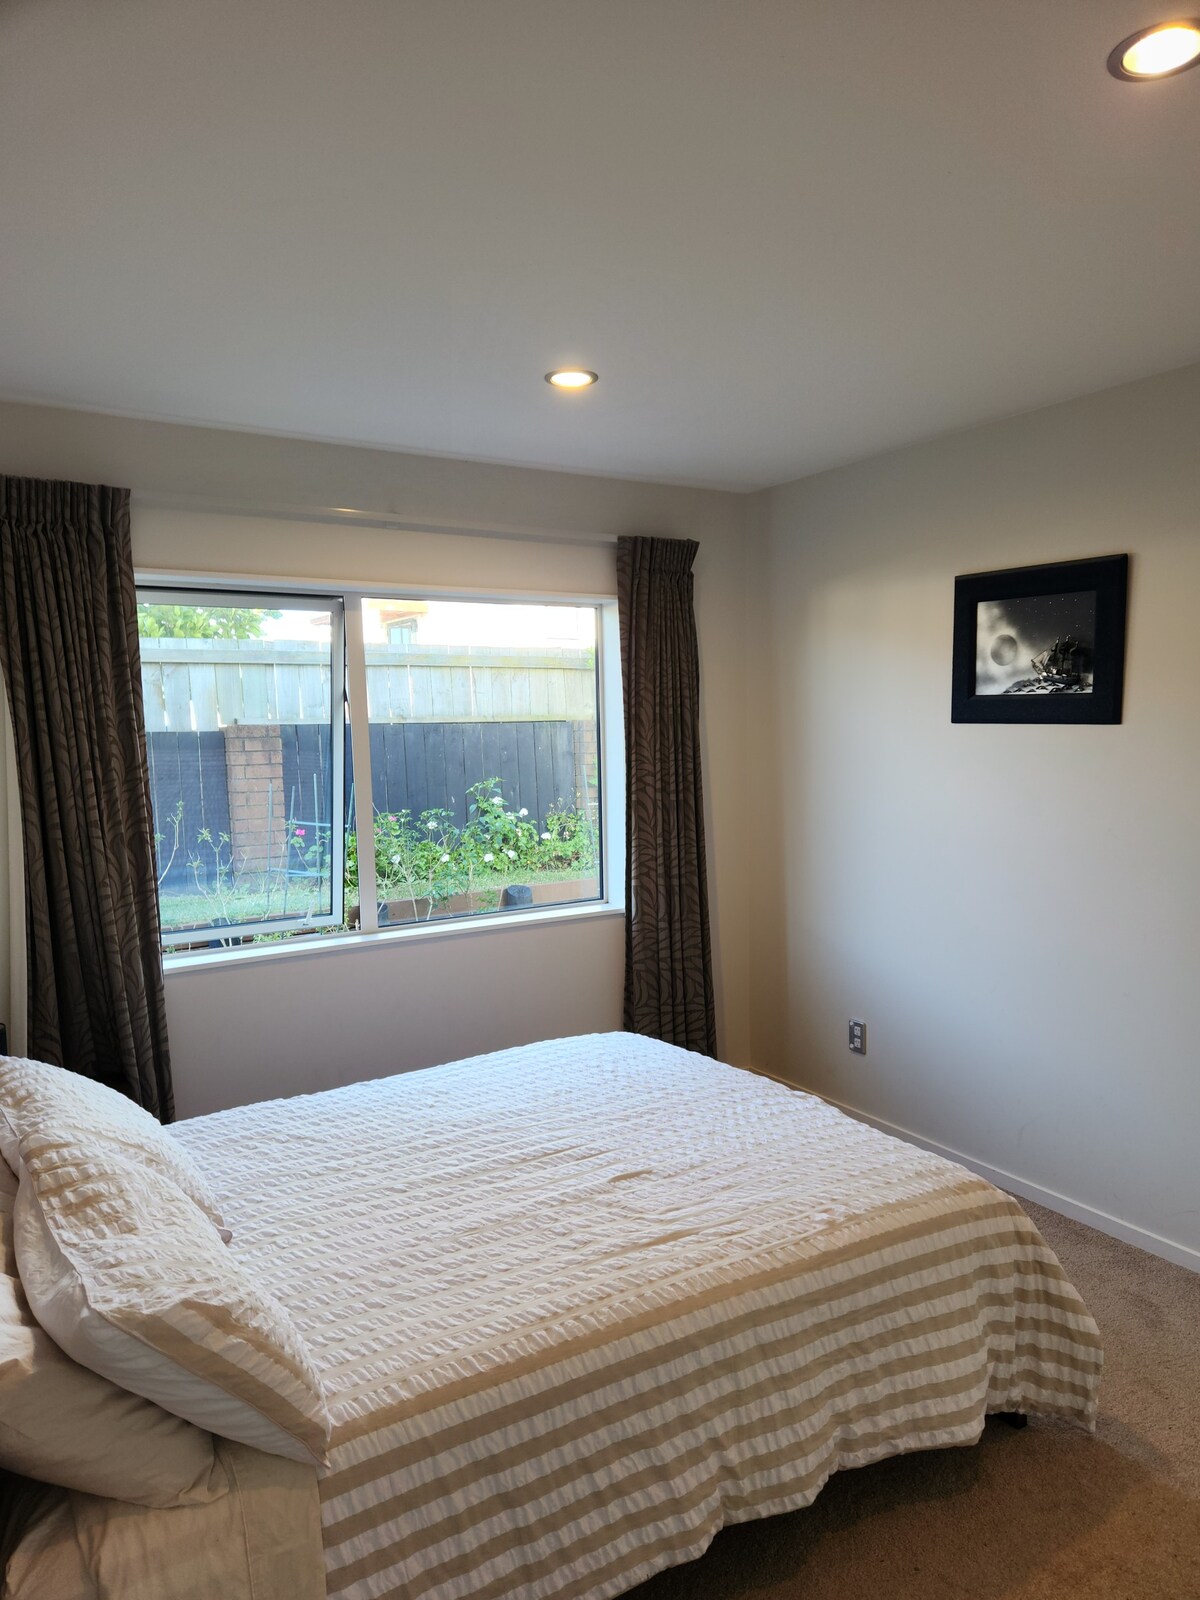 便宜、舒适、舒适、新西兰的奥克兰房源